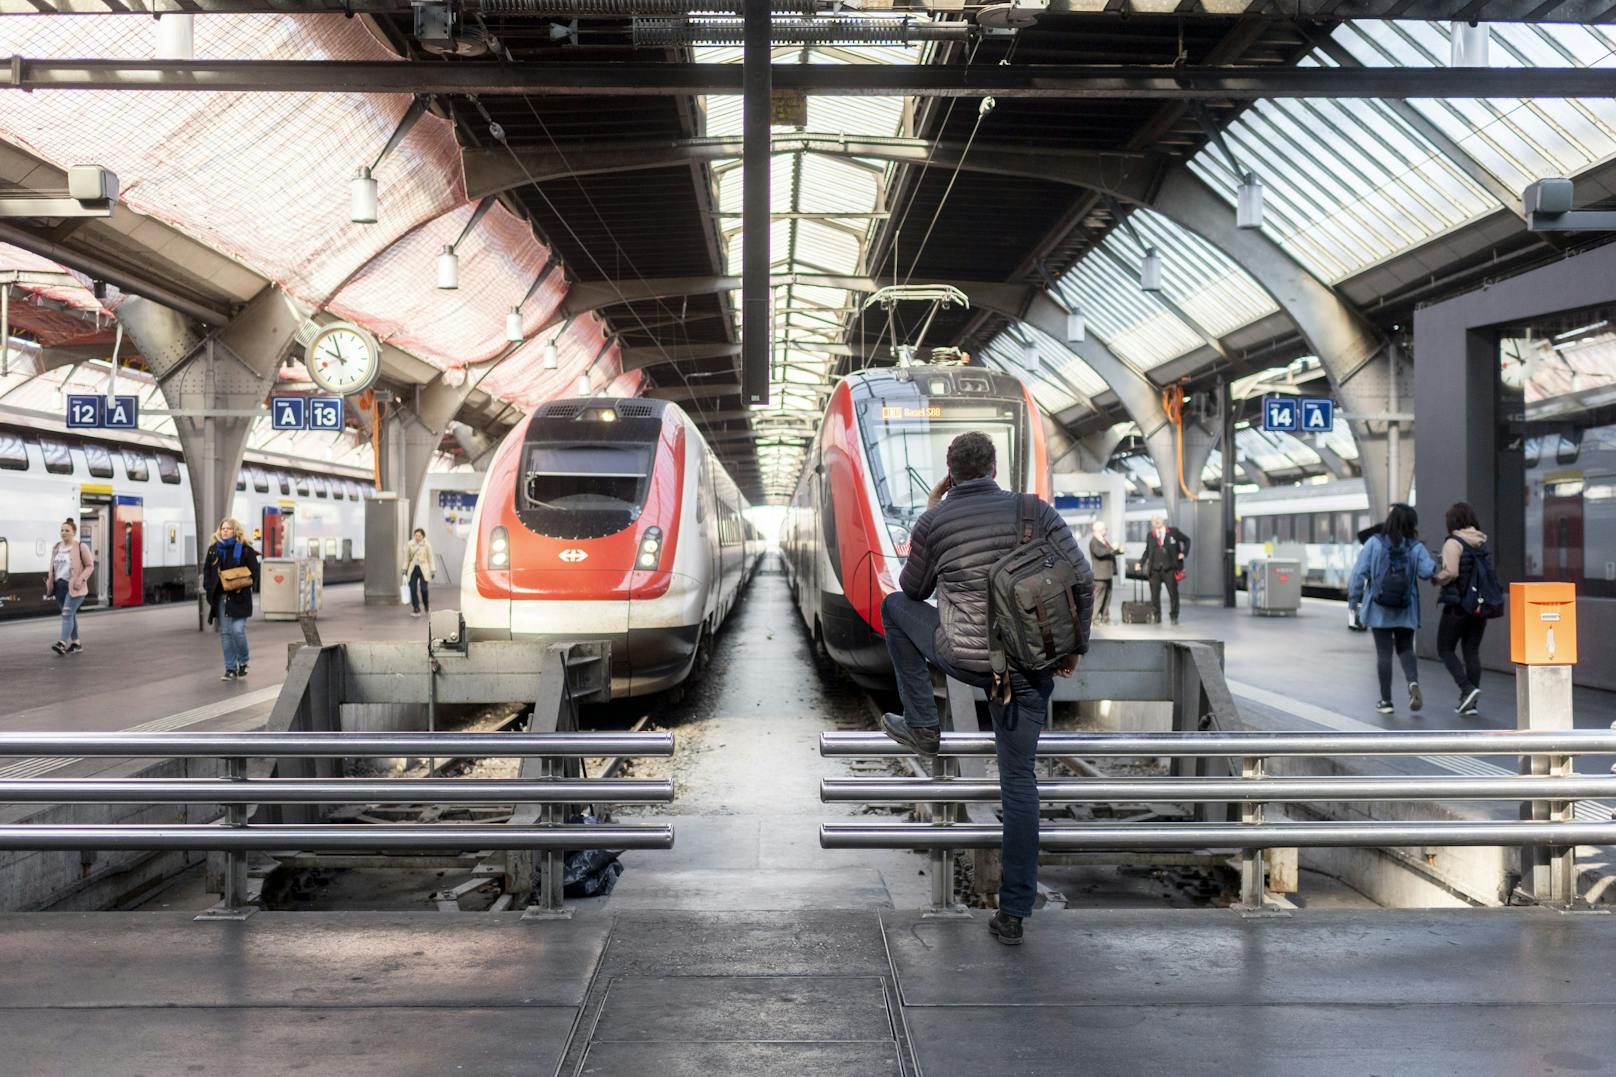 Am Züricher Hauptbahnhof hat sich am Freitag (07. Mai 2021) ein Tötungsversuch zugetragen. Ein 27-Jähriger stieß eine Frau vor den einfahrenden Zug. Die Notbremsung gelang, die Frau überlebte. Symbolbild.